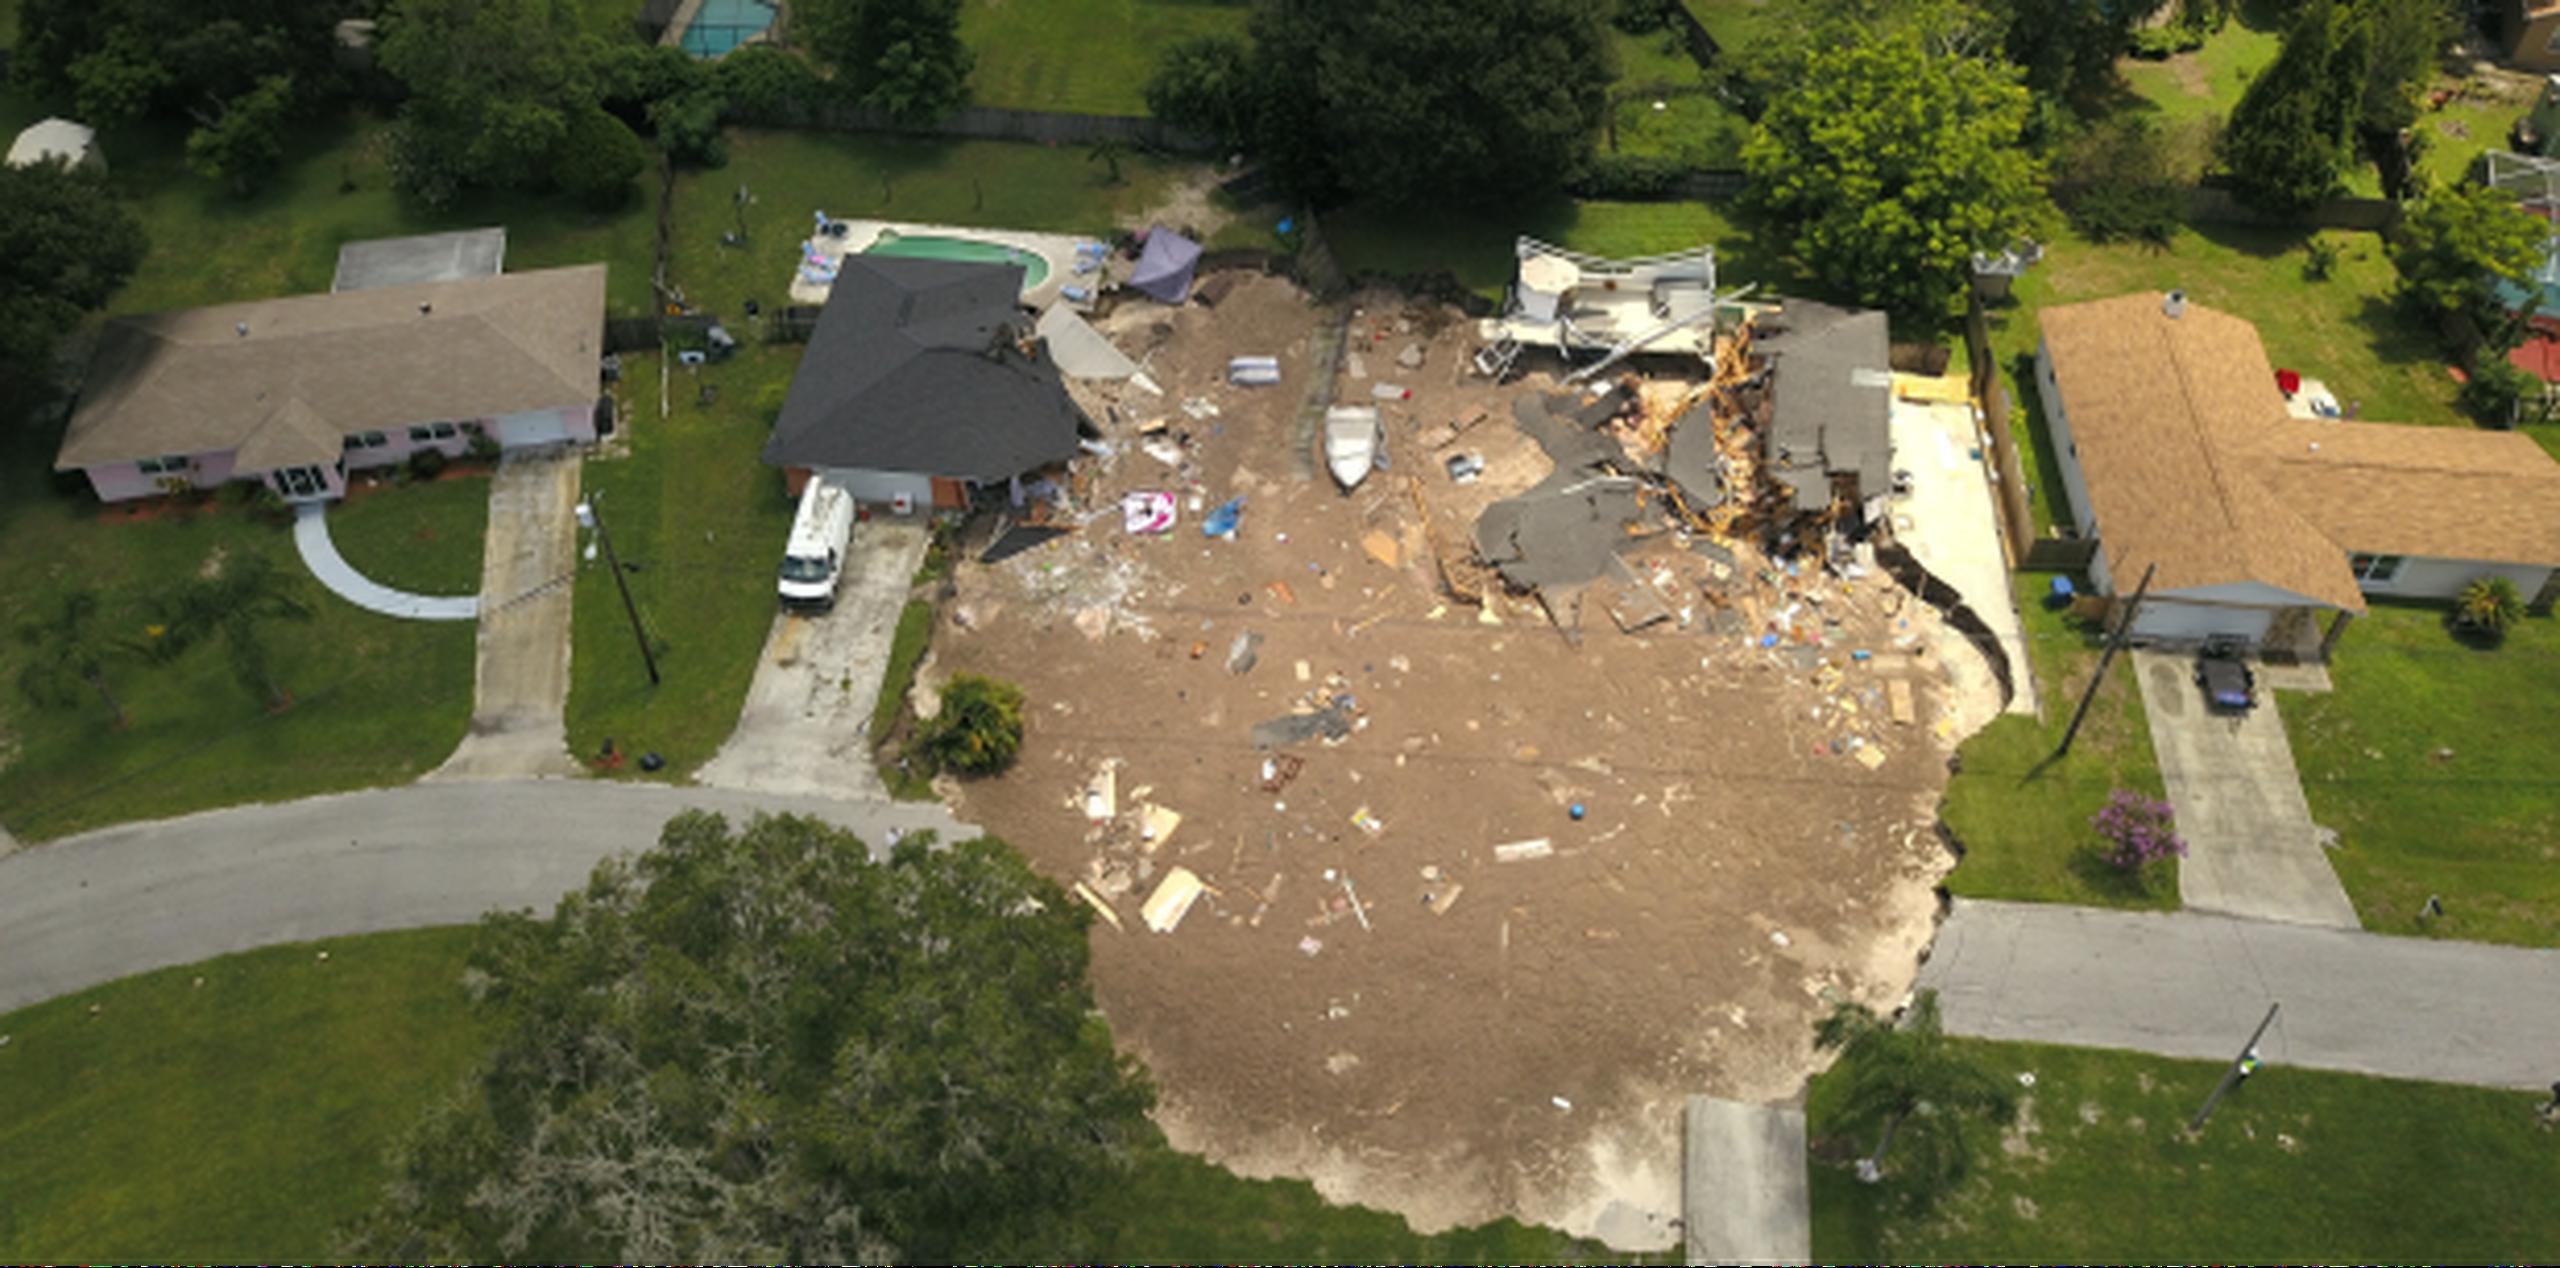 Unas 10 residencias de la zona no son seguras. (Luis Santana / Tampa Bay Times vía AP)